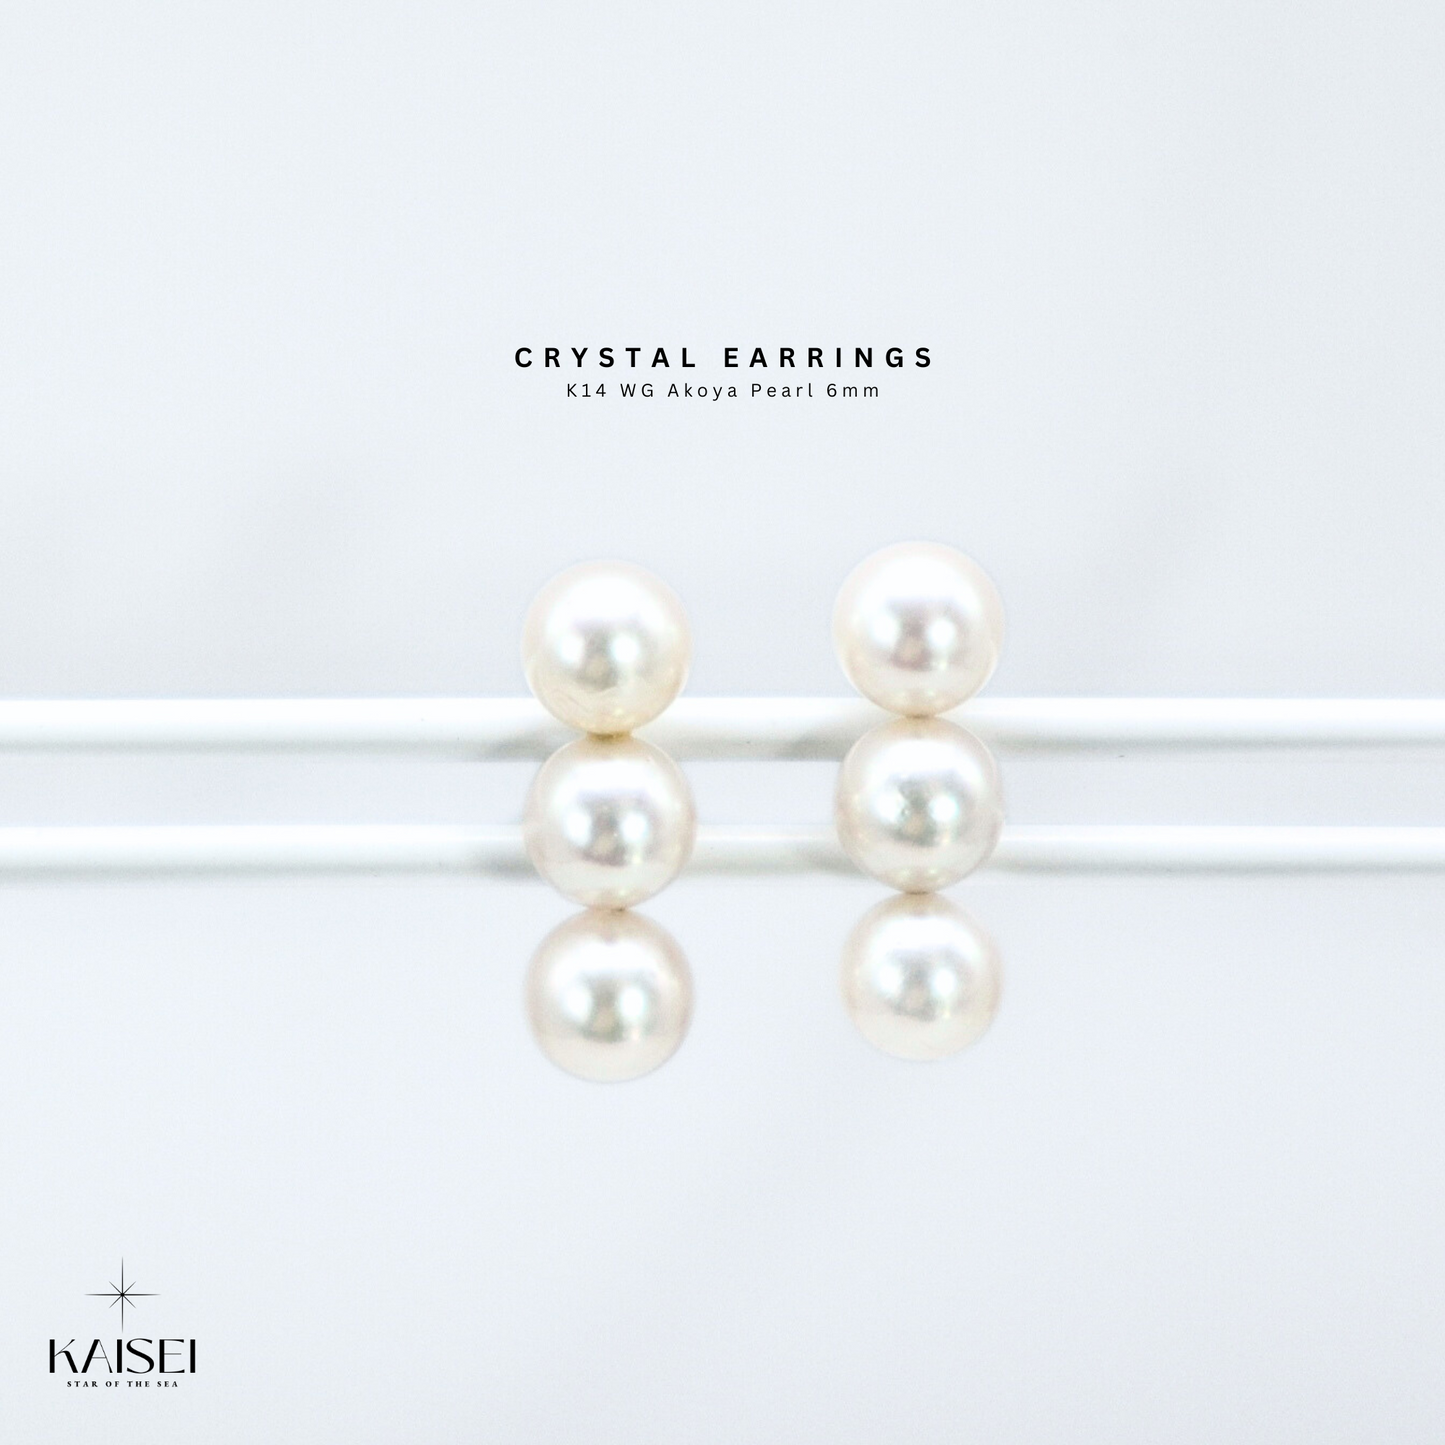 Kaisei Pearl - Crystal Earrings K14 WG Akoya Pearl 6mm Japanese Luxury Jewelry